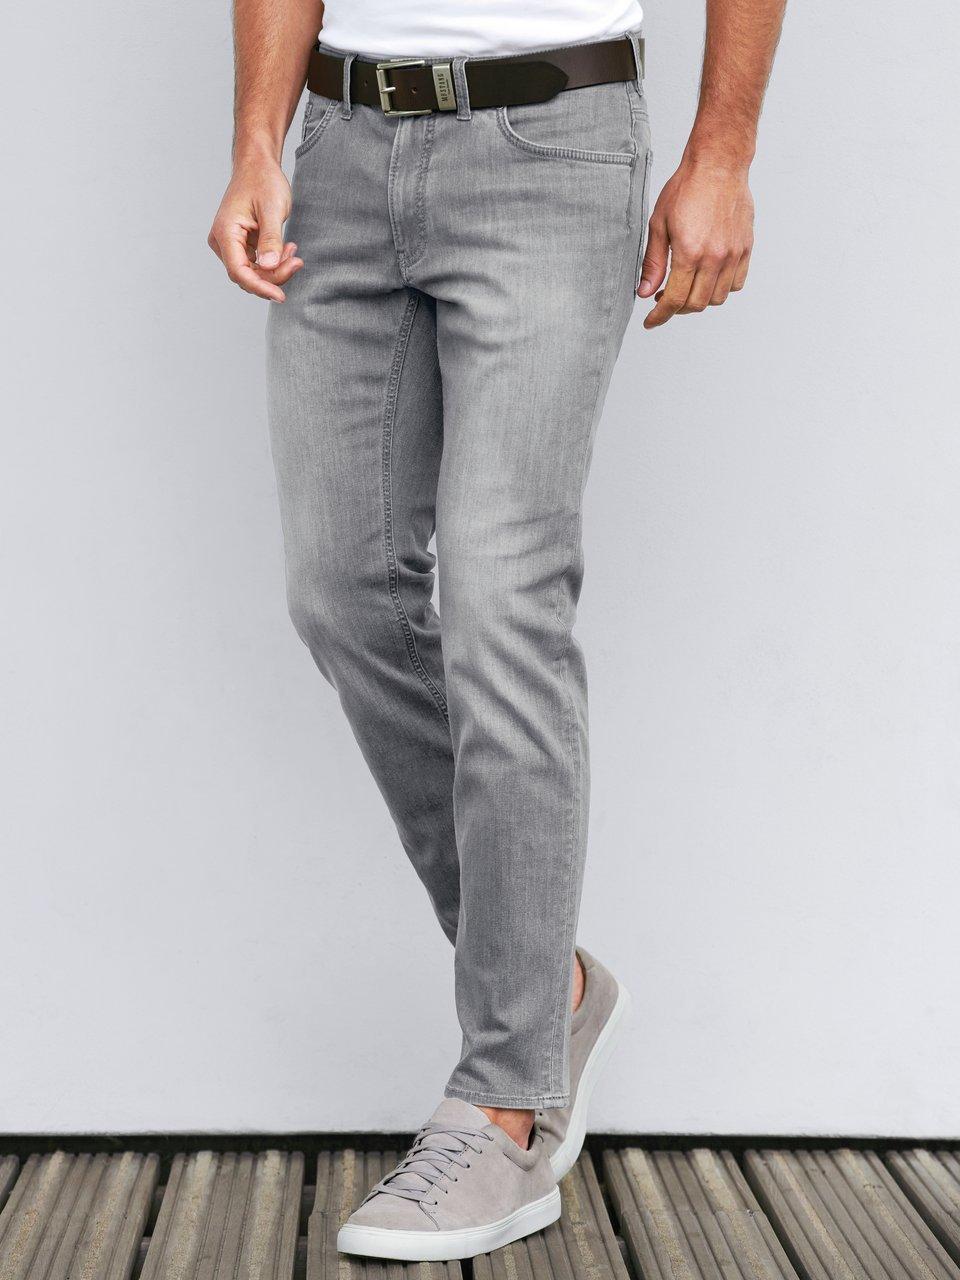 rechtdoor seinpaal Skalk Brax Feel Good - 'Modern Fit'-jeans model Chuck - lichtgrijs